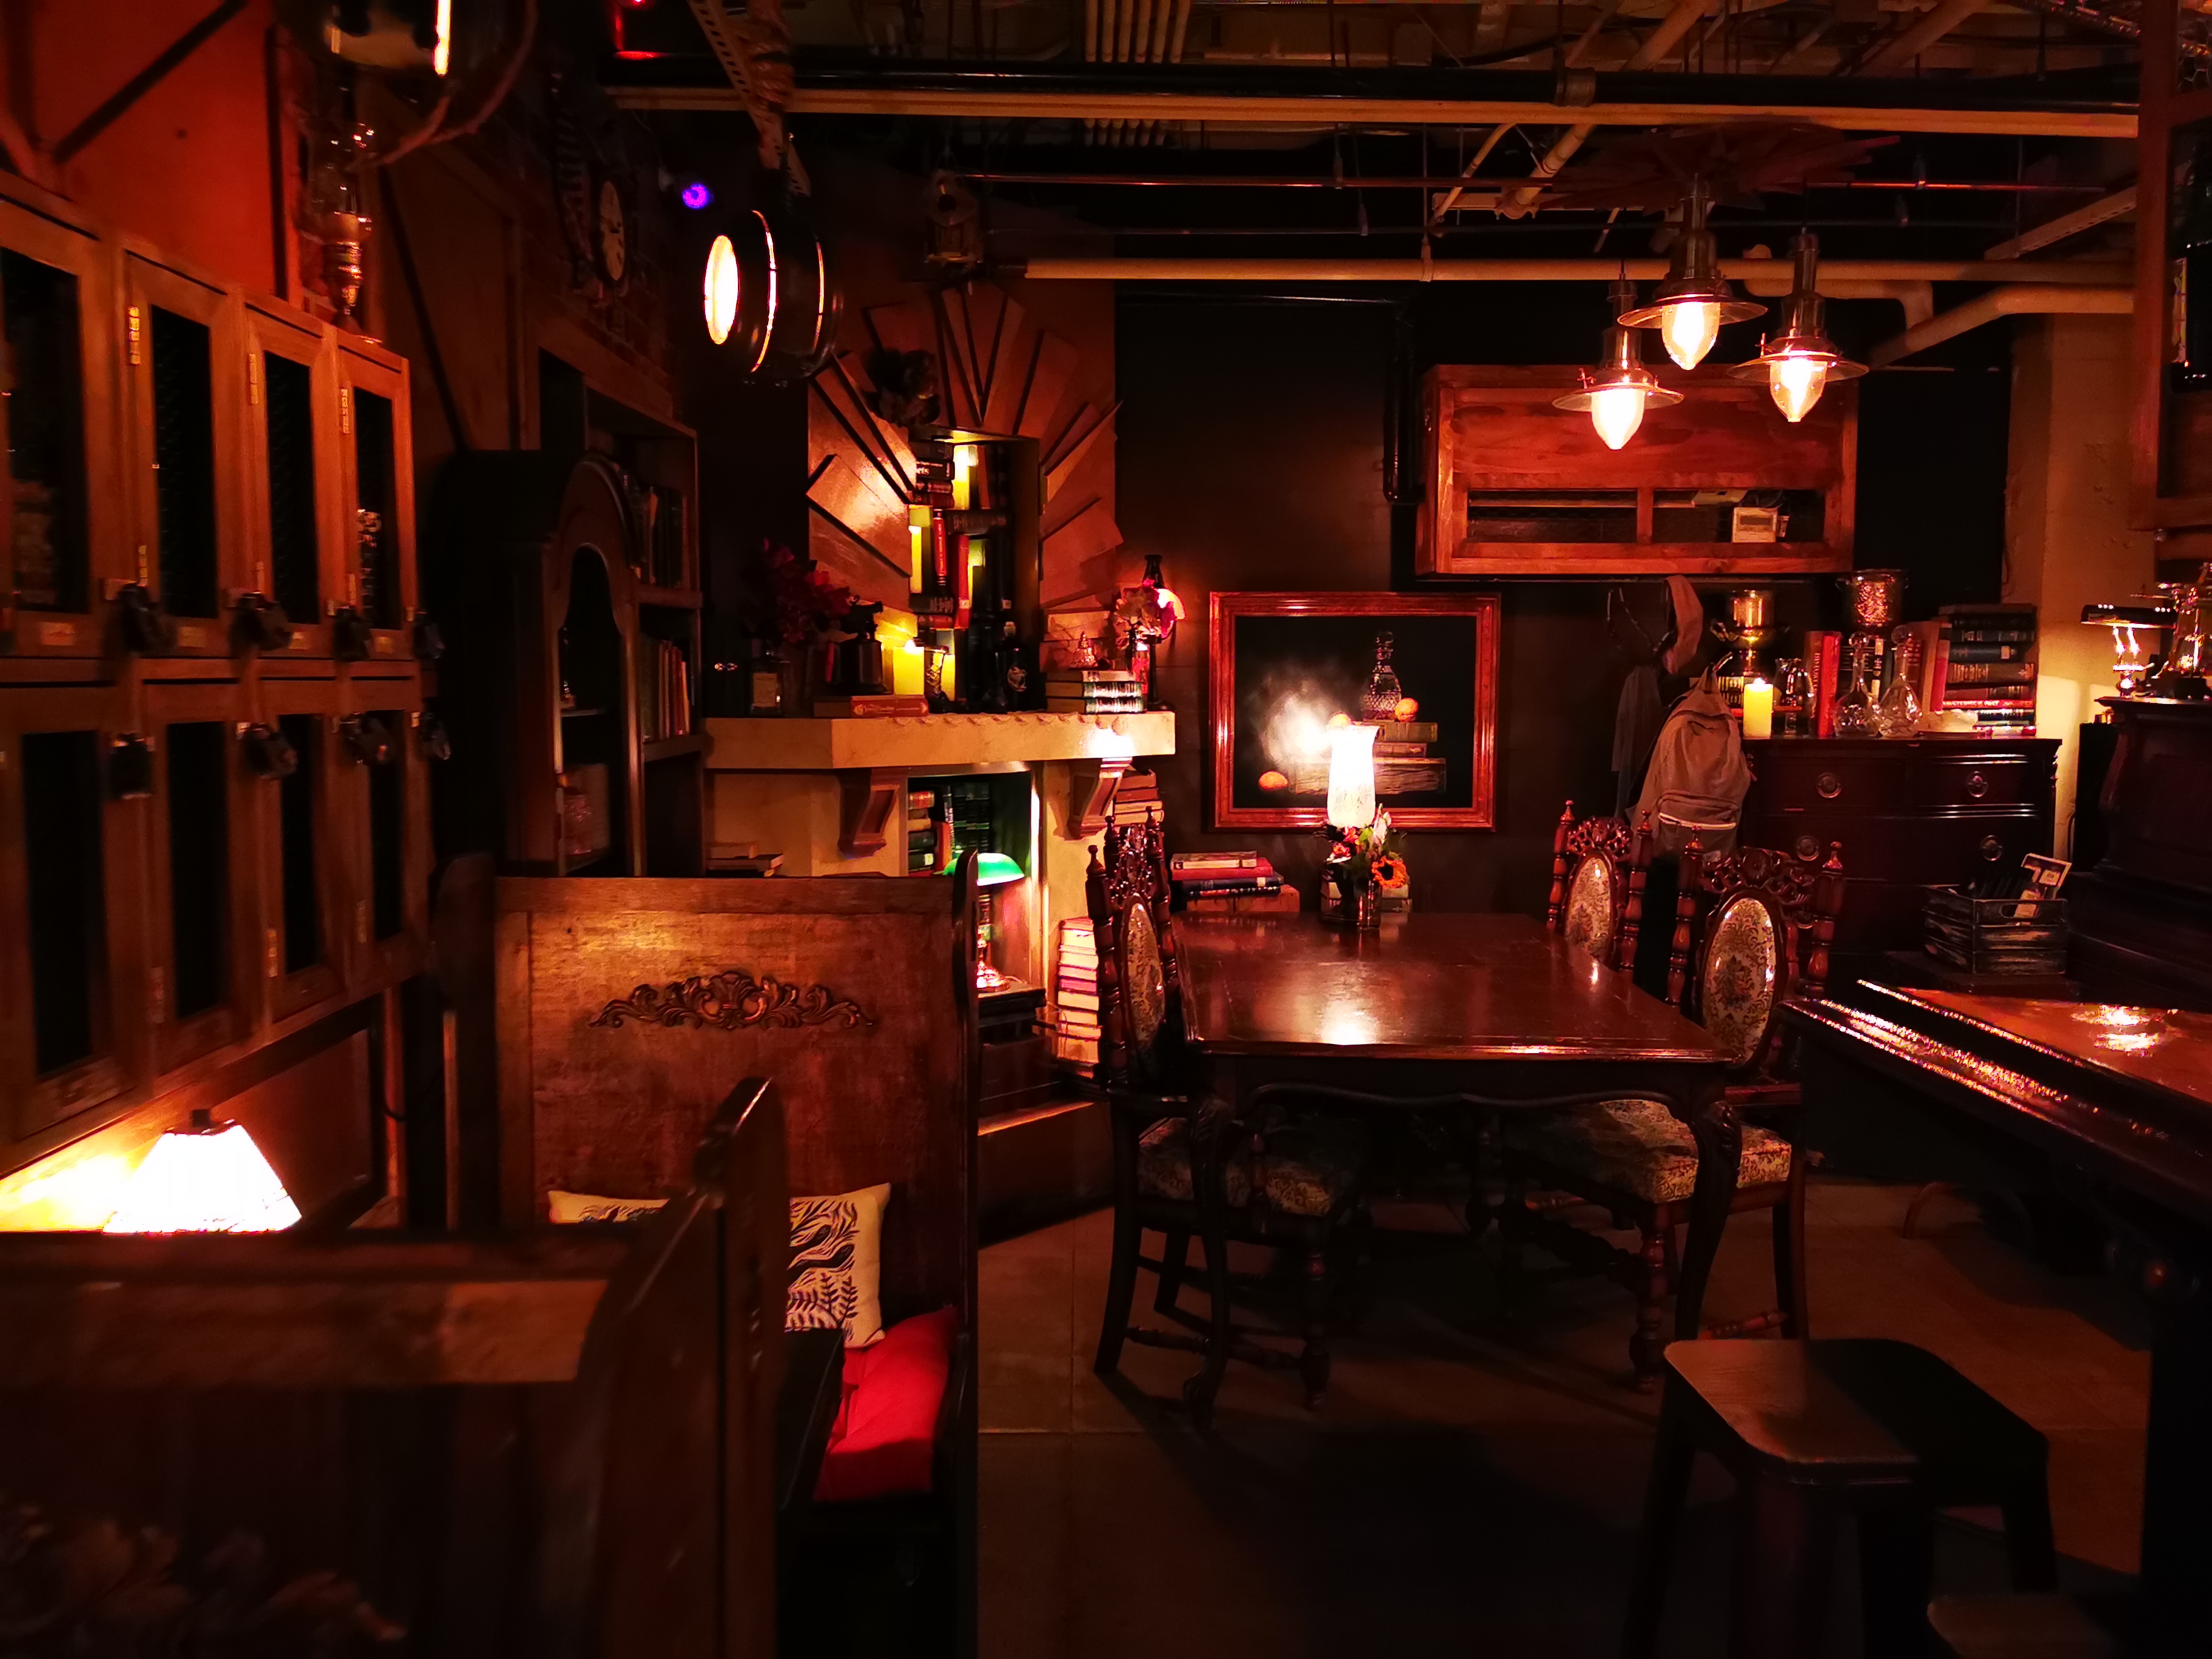 The Blind Rabbit - Speakeasy Bar (Inside Anaheim Packing District